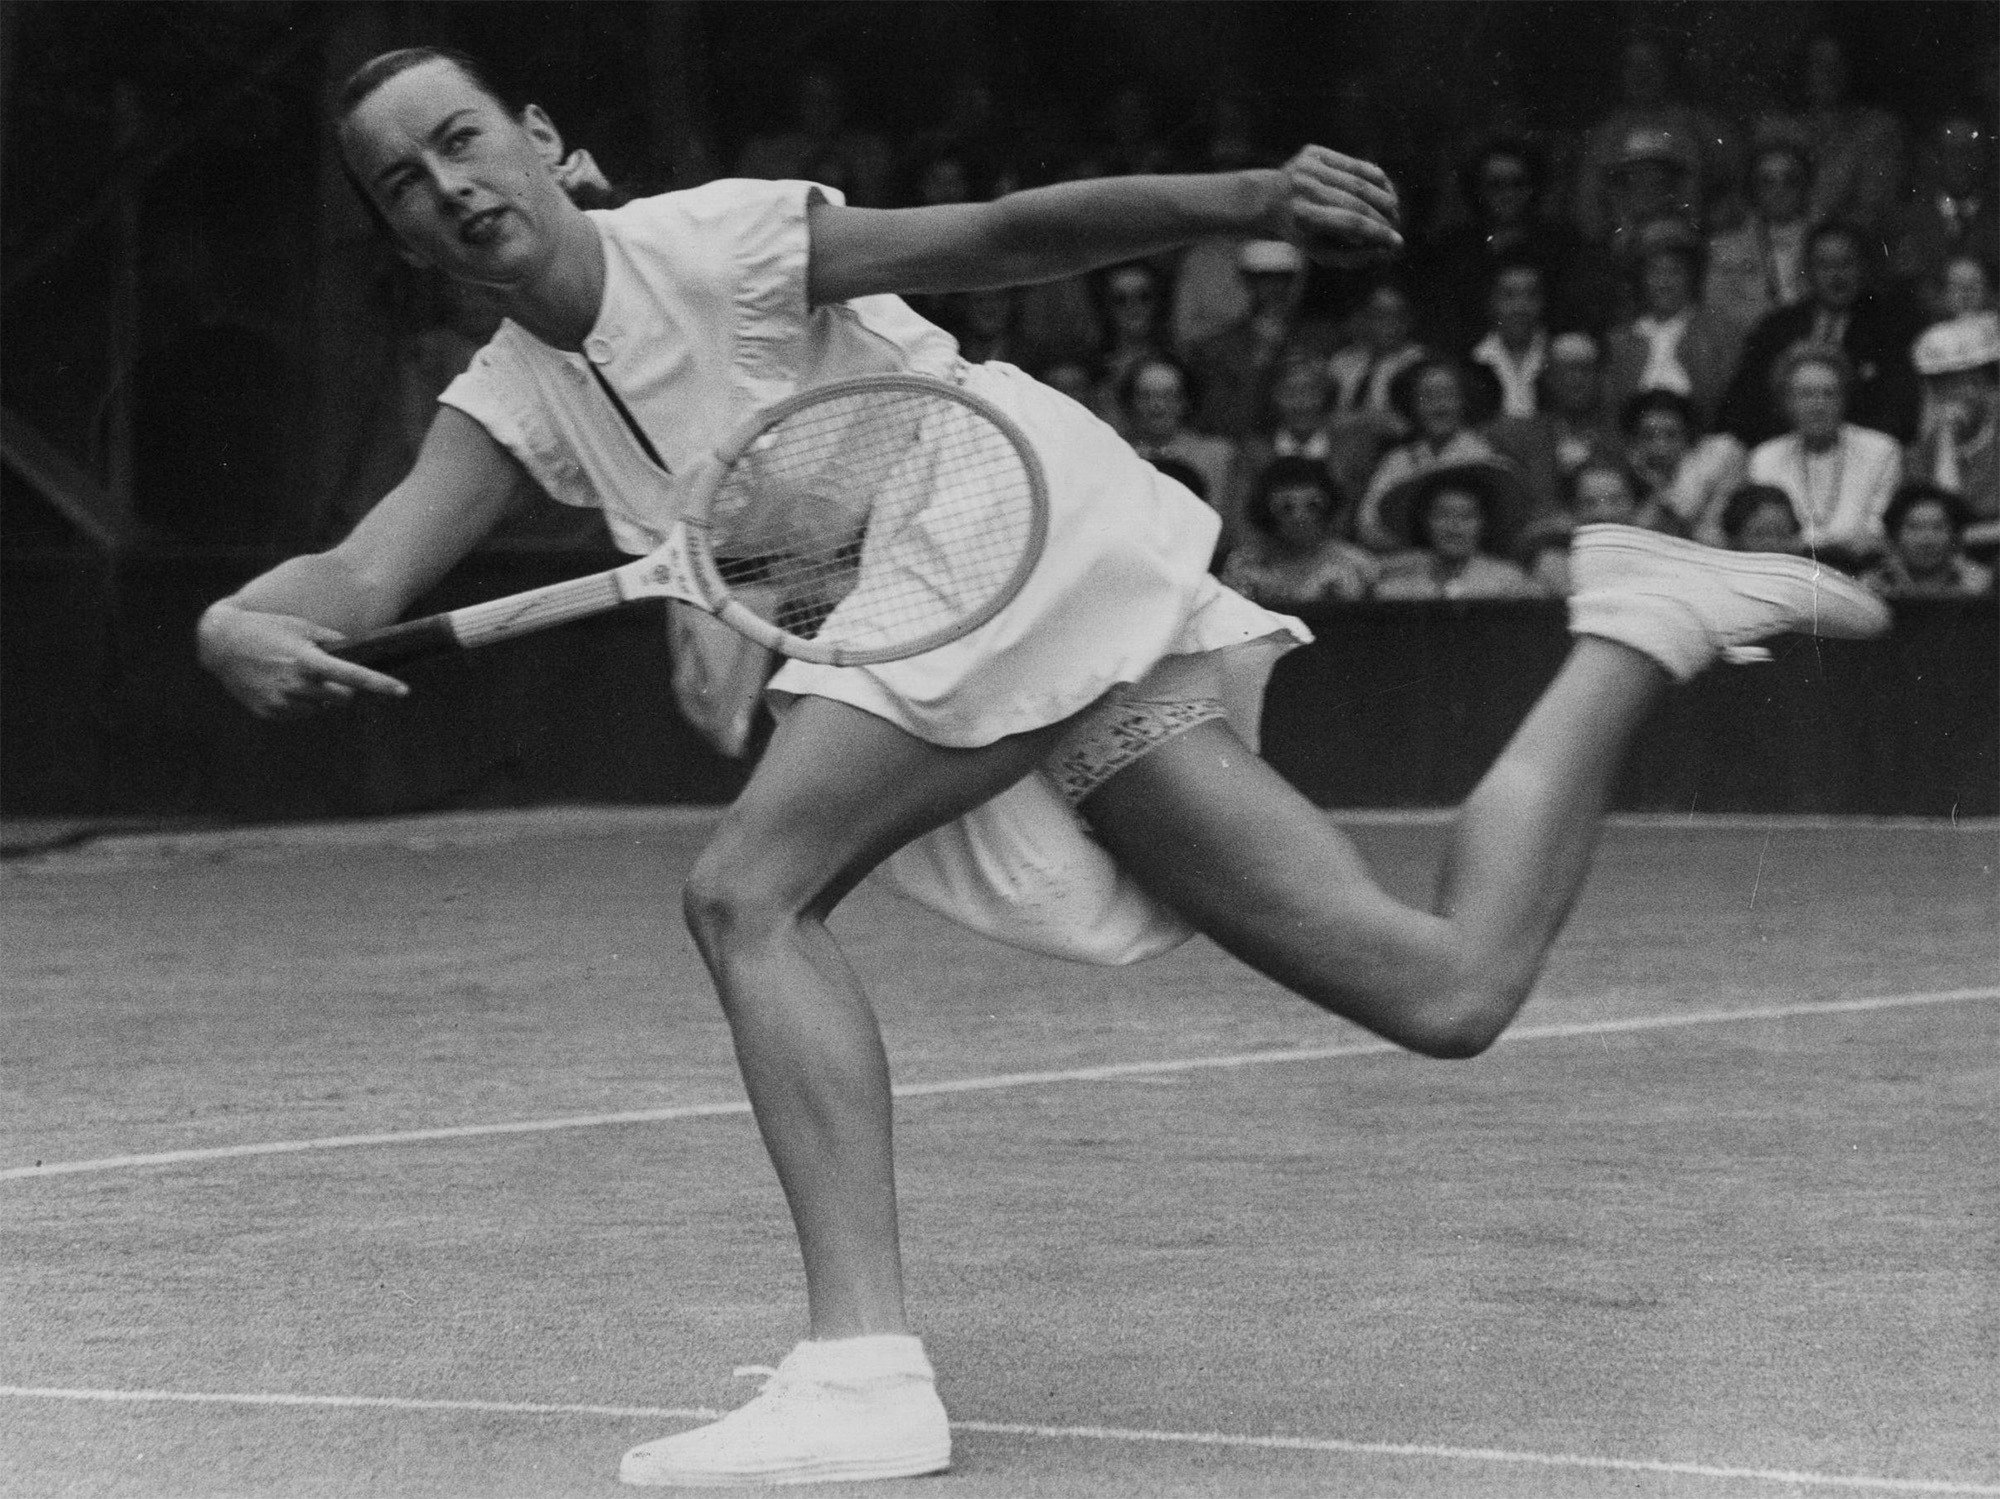 Gussie Moran tenislaria Wimbledon lehiaketako 1949ko ekitaldian, parpailadun eta koloredun kuleroak jantzita. Argazkia: George W. Hales